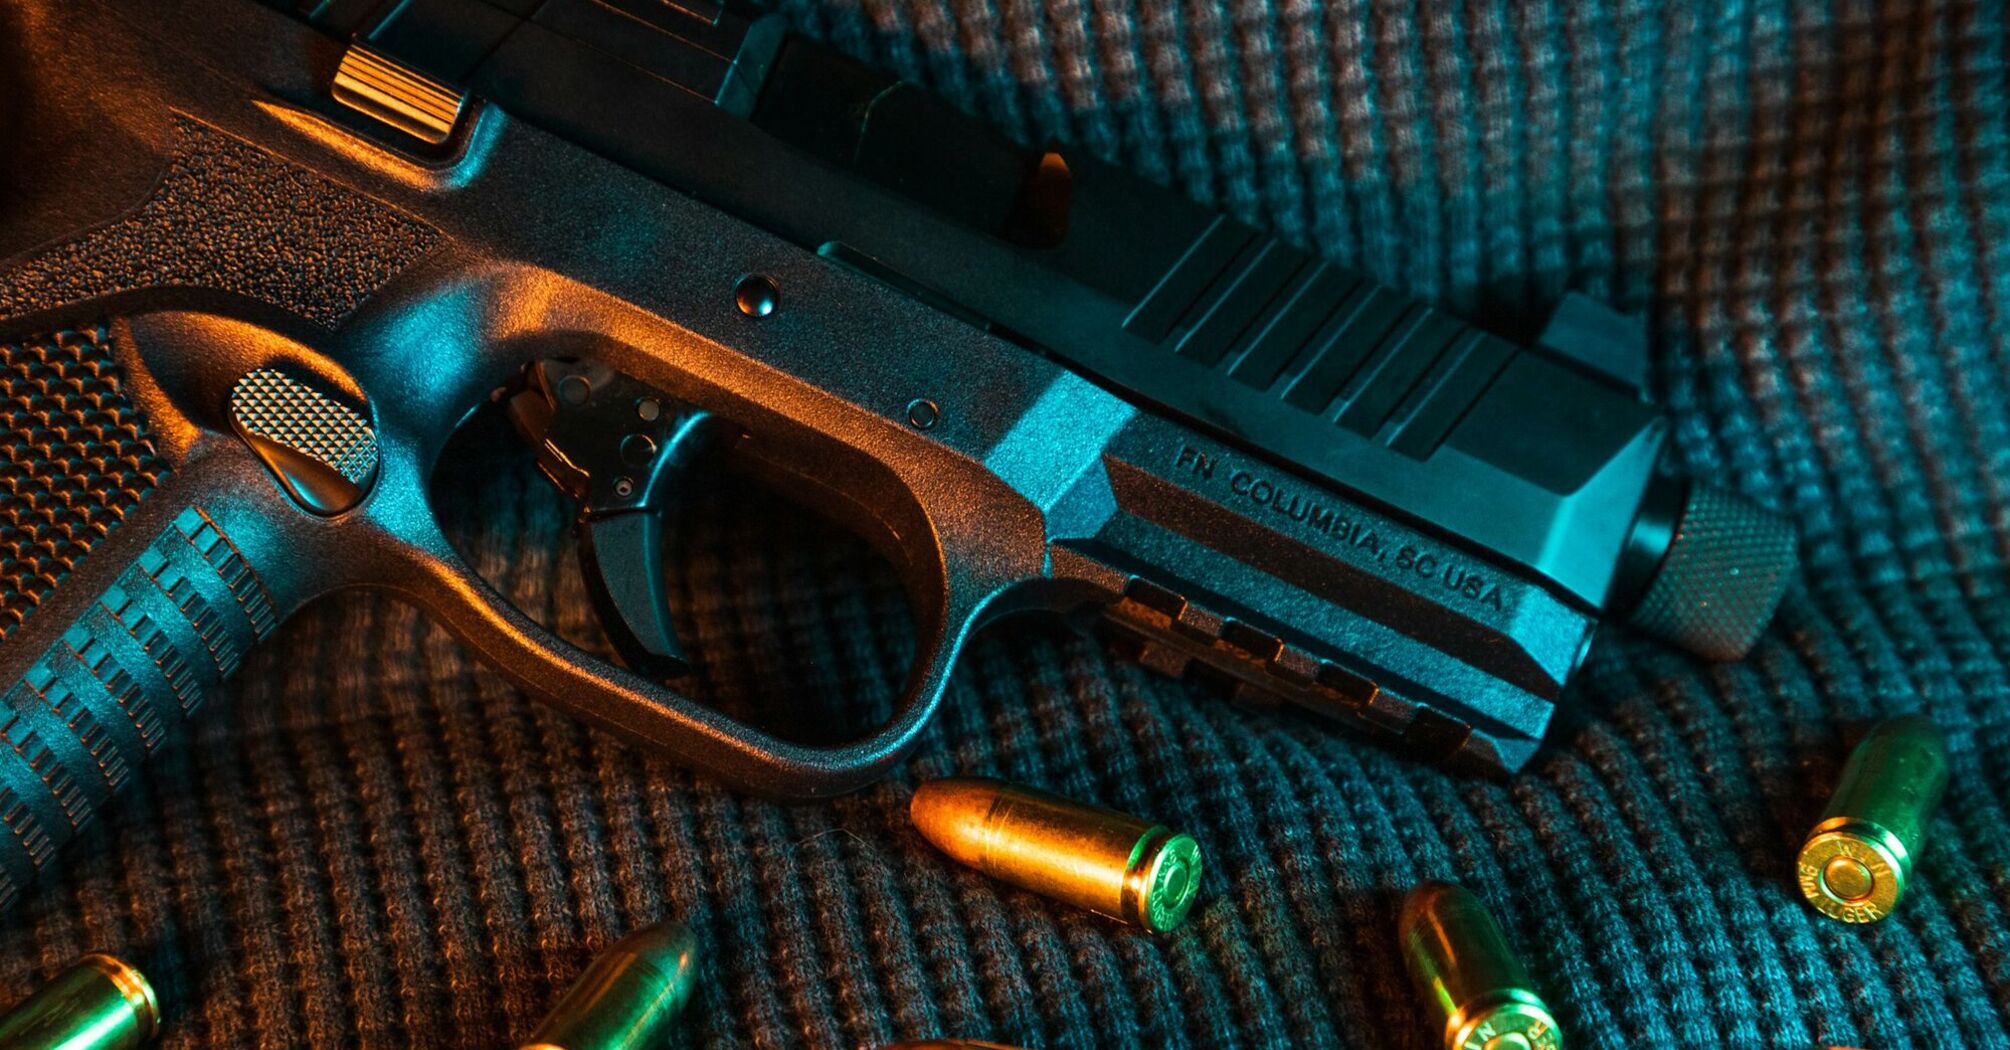 A close-up of a loaded handgun